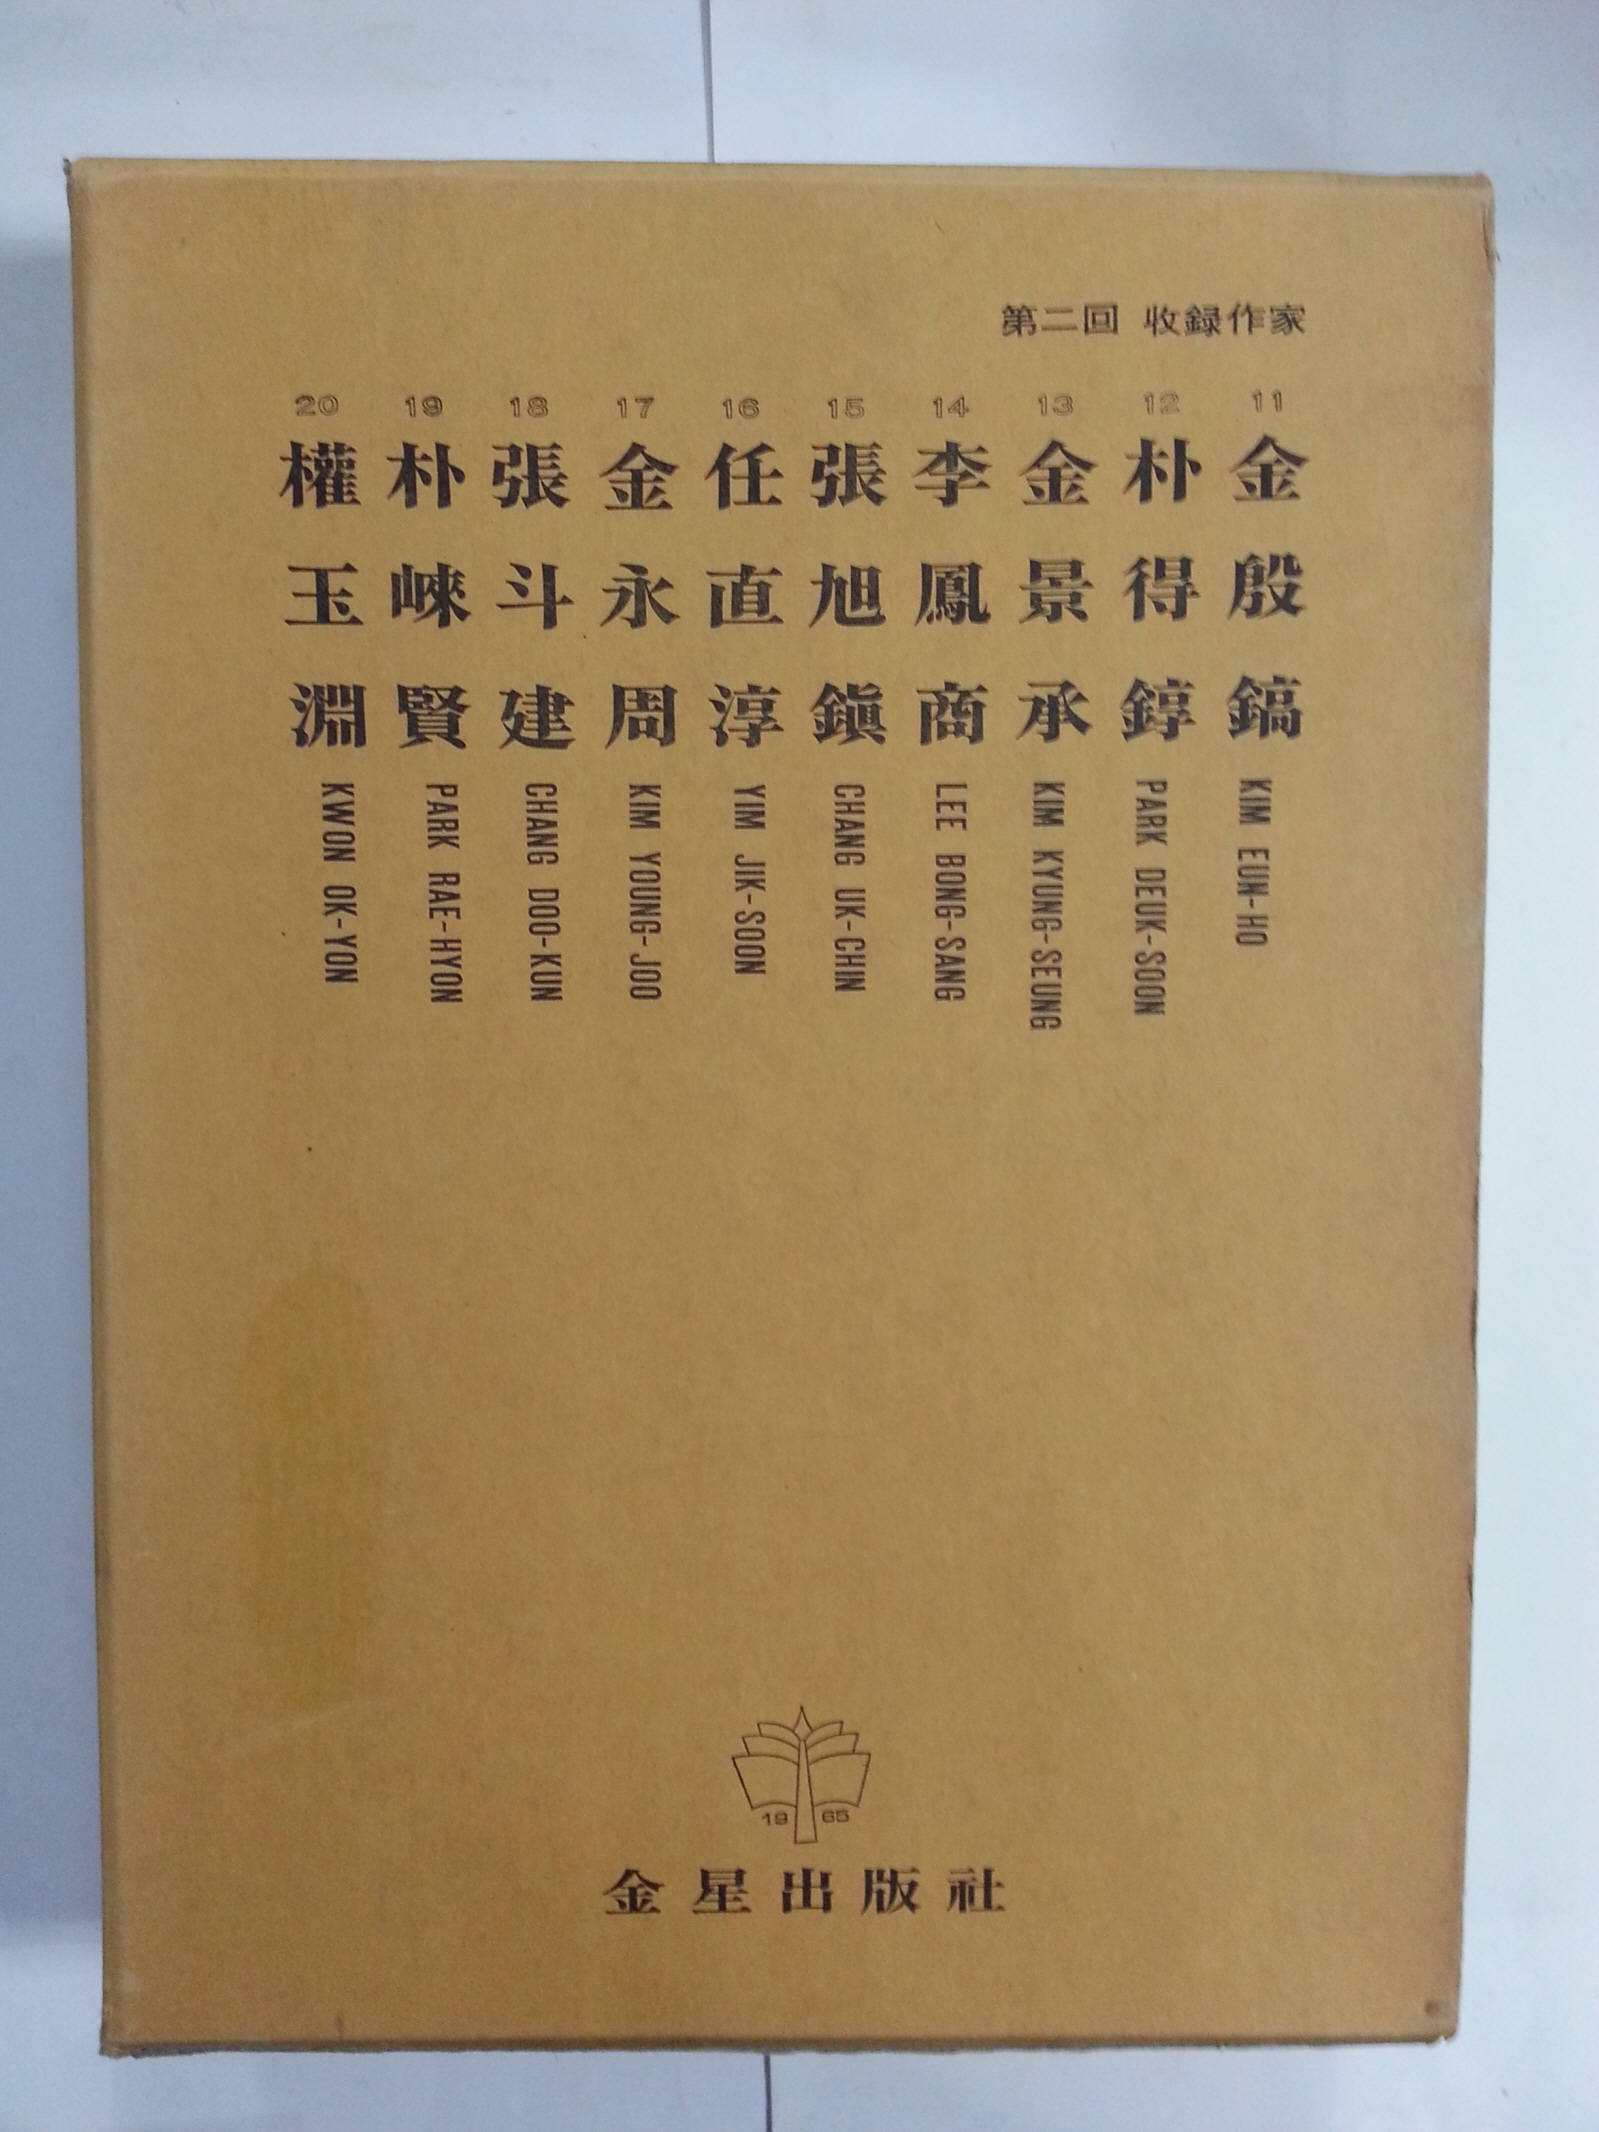 한국현대미술대표작가100인선집 100권 (1975년초판~1980중판)